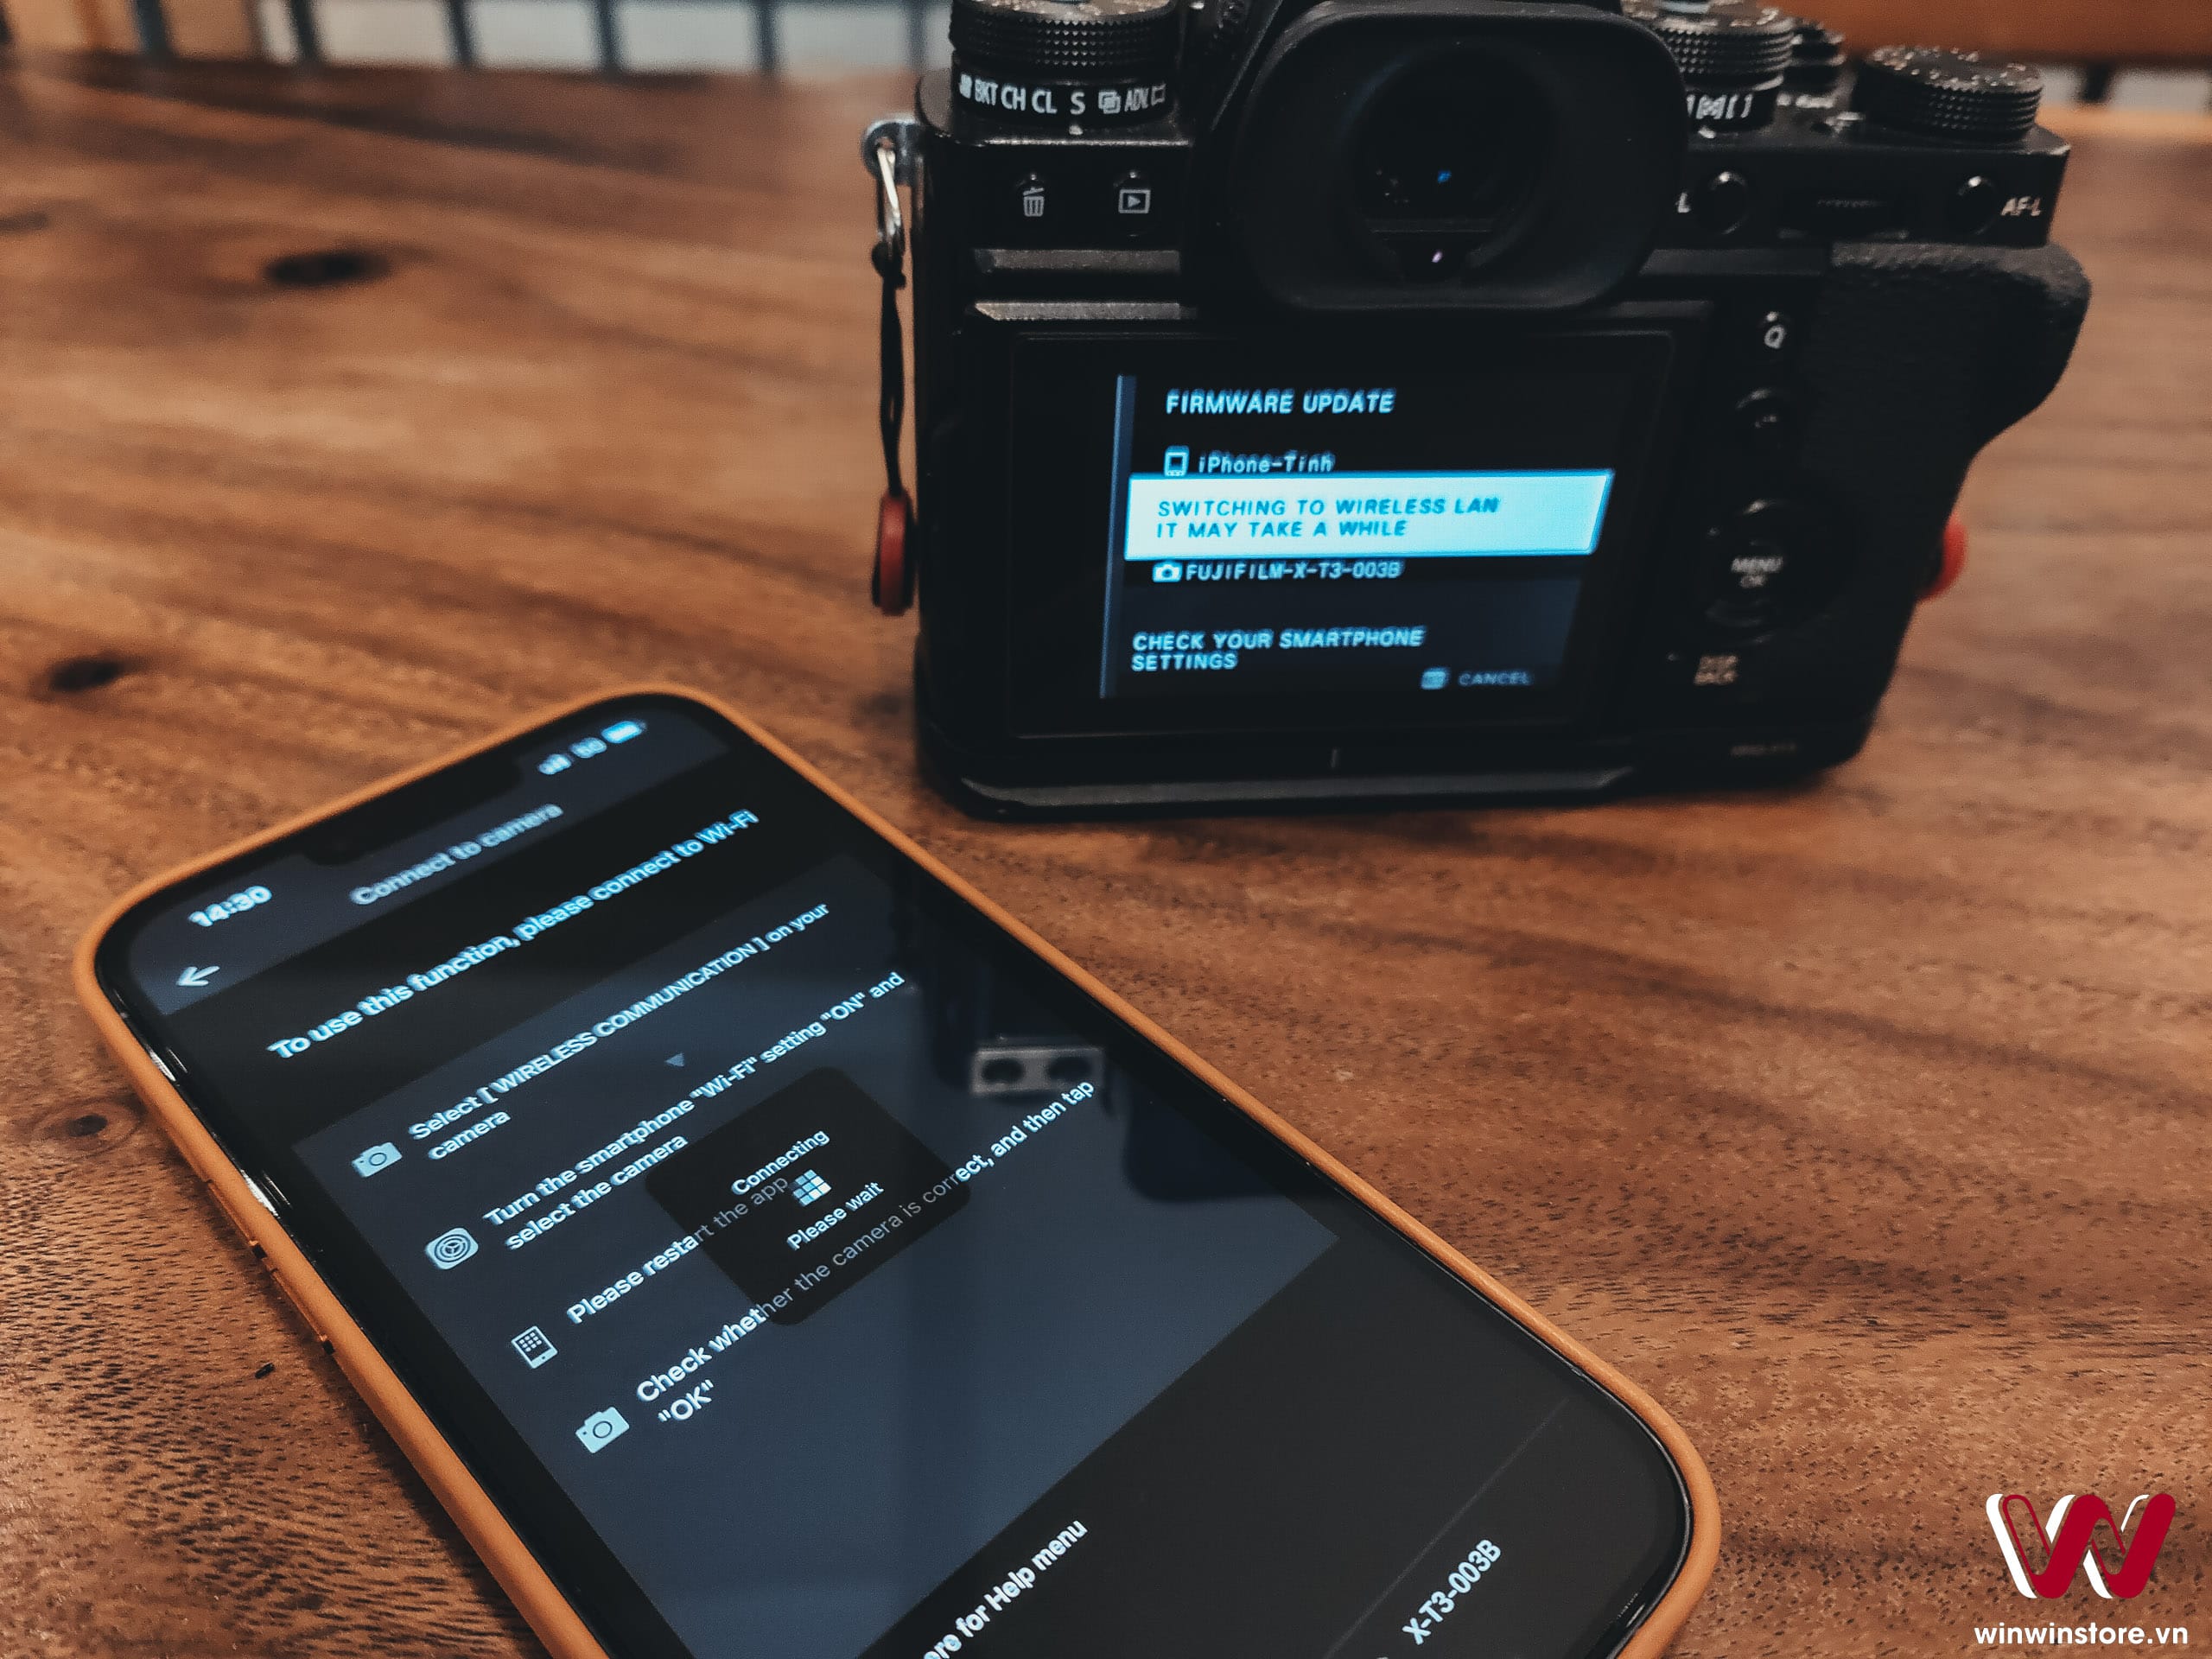 Hướng dẫn cập nhật firmware máy ảnh Fujifilm bằng điện thoại